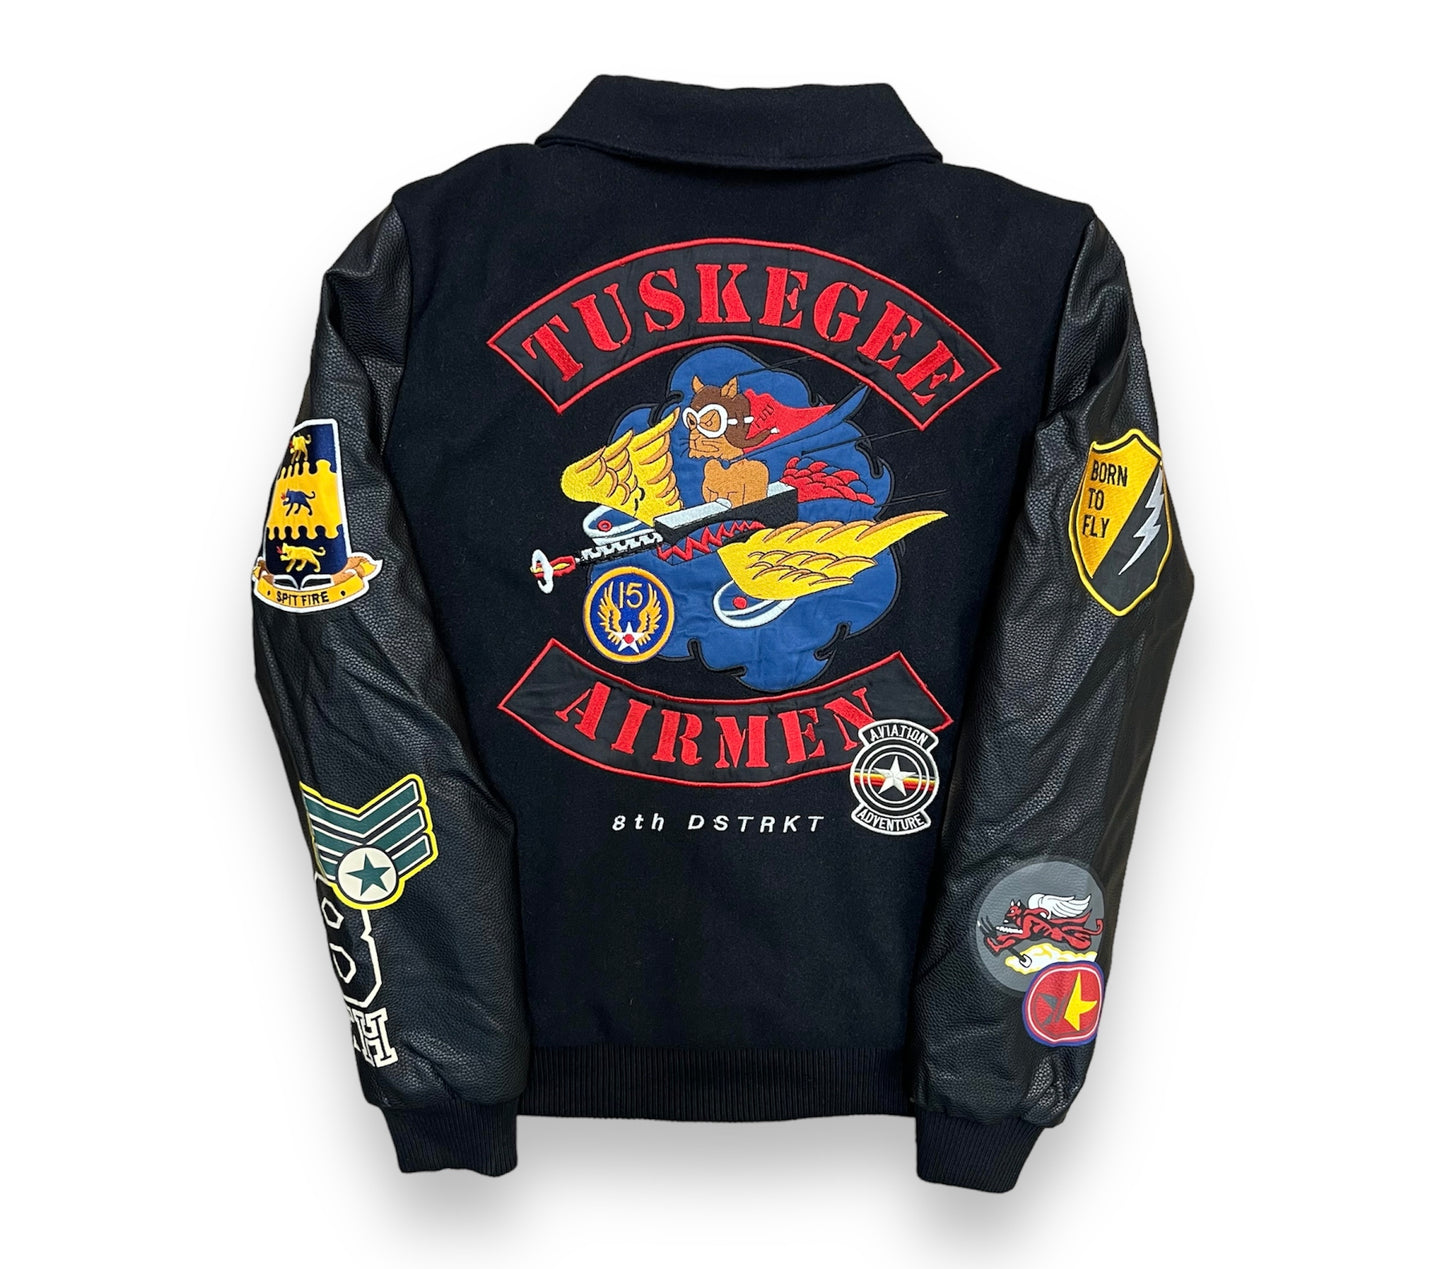 8ight Dstrkt Tuskegee Airmen Black Varsity Jacket